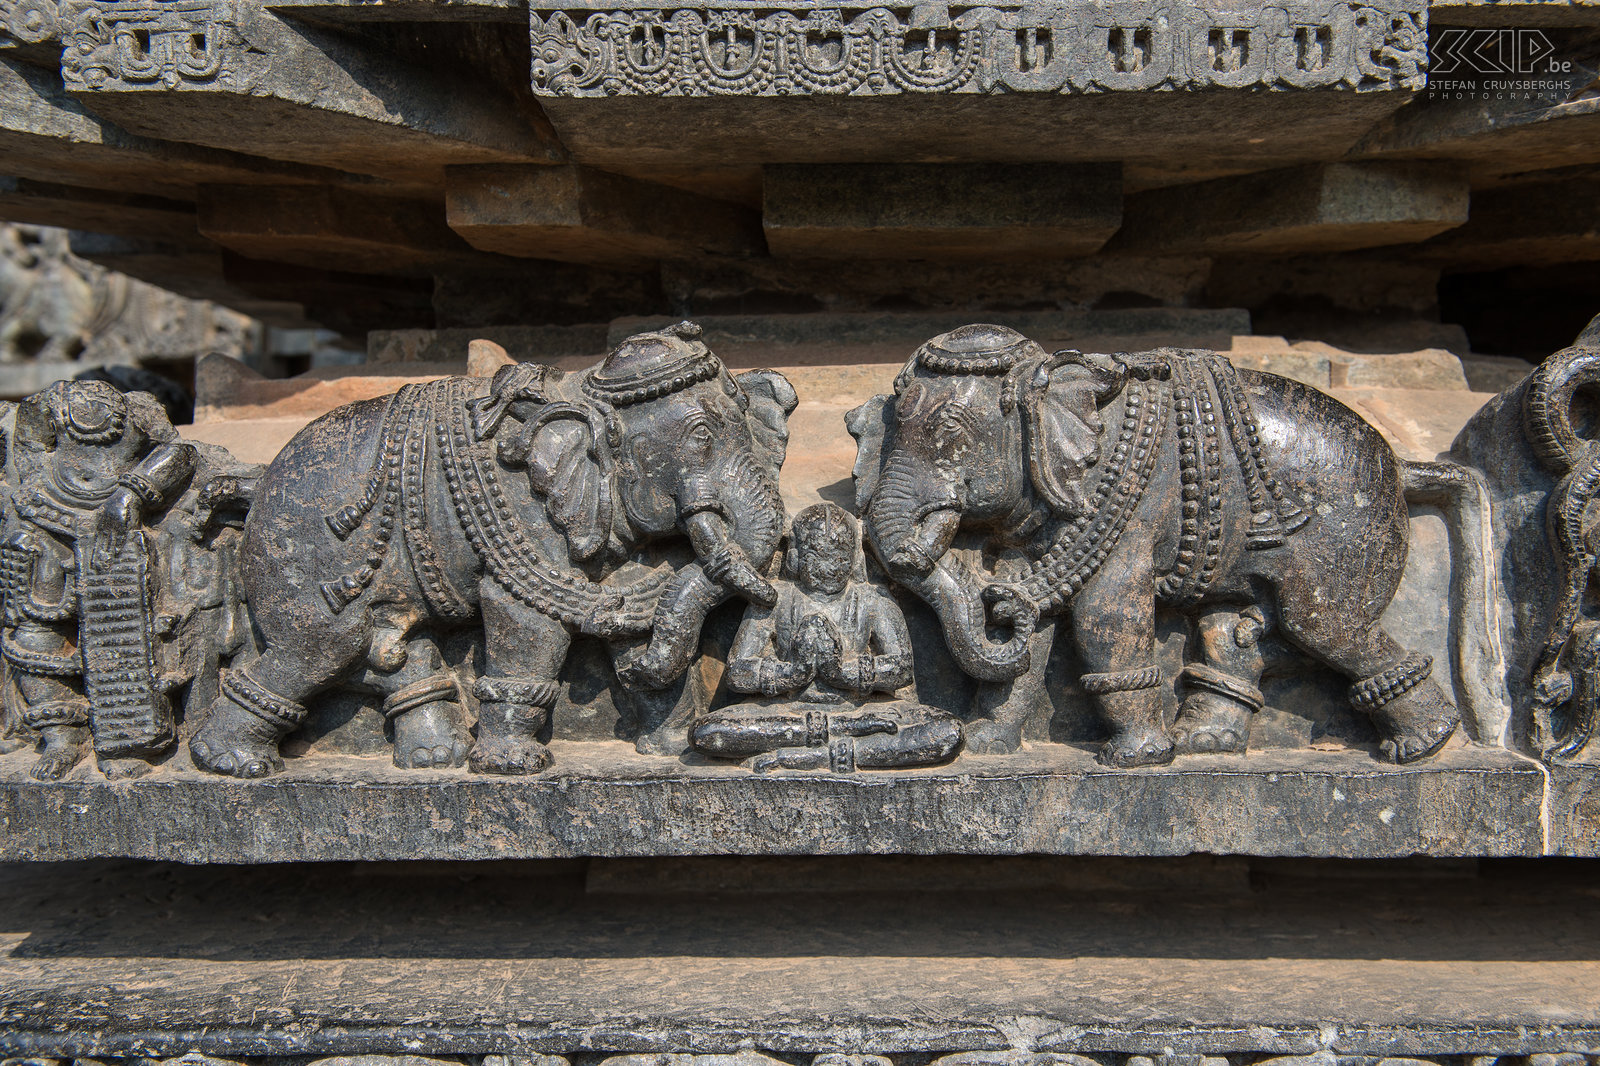 Halebidu De muren van de Hoysala tempel in Halebidu zijn bedekt met prachtige verfijnde reliëfs met zeer veel details. Stefan Cruysberghs